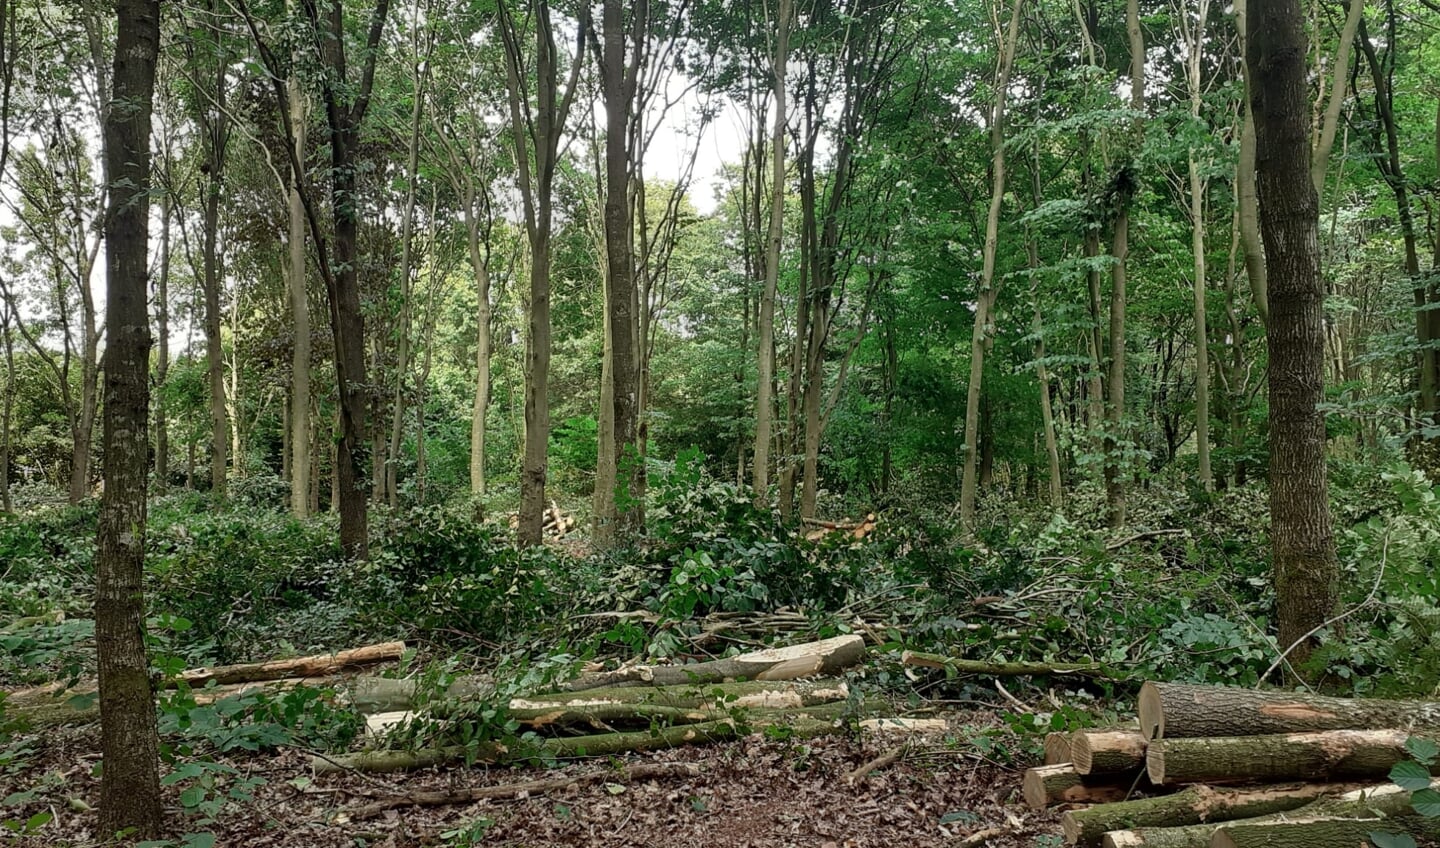 Het hout van de weggehaalde bomen blijft liggen als 'voedsel' voor planten en dieren. 